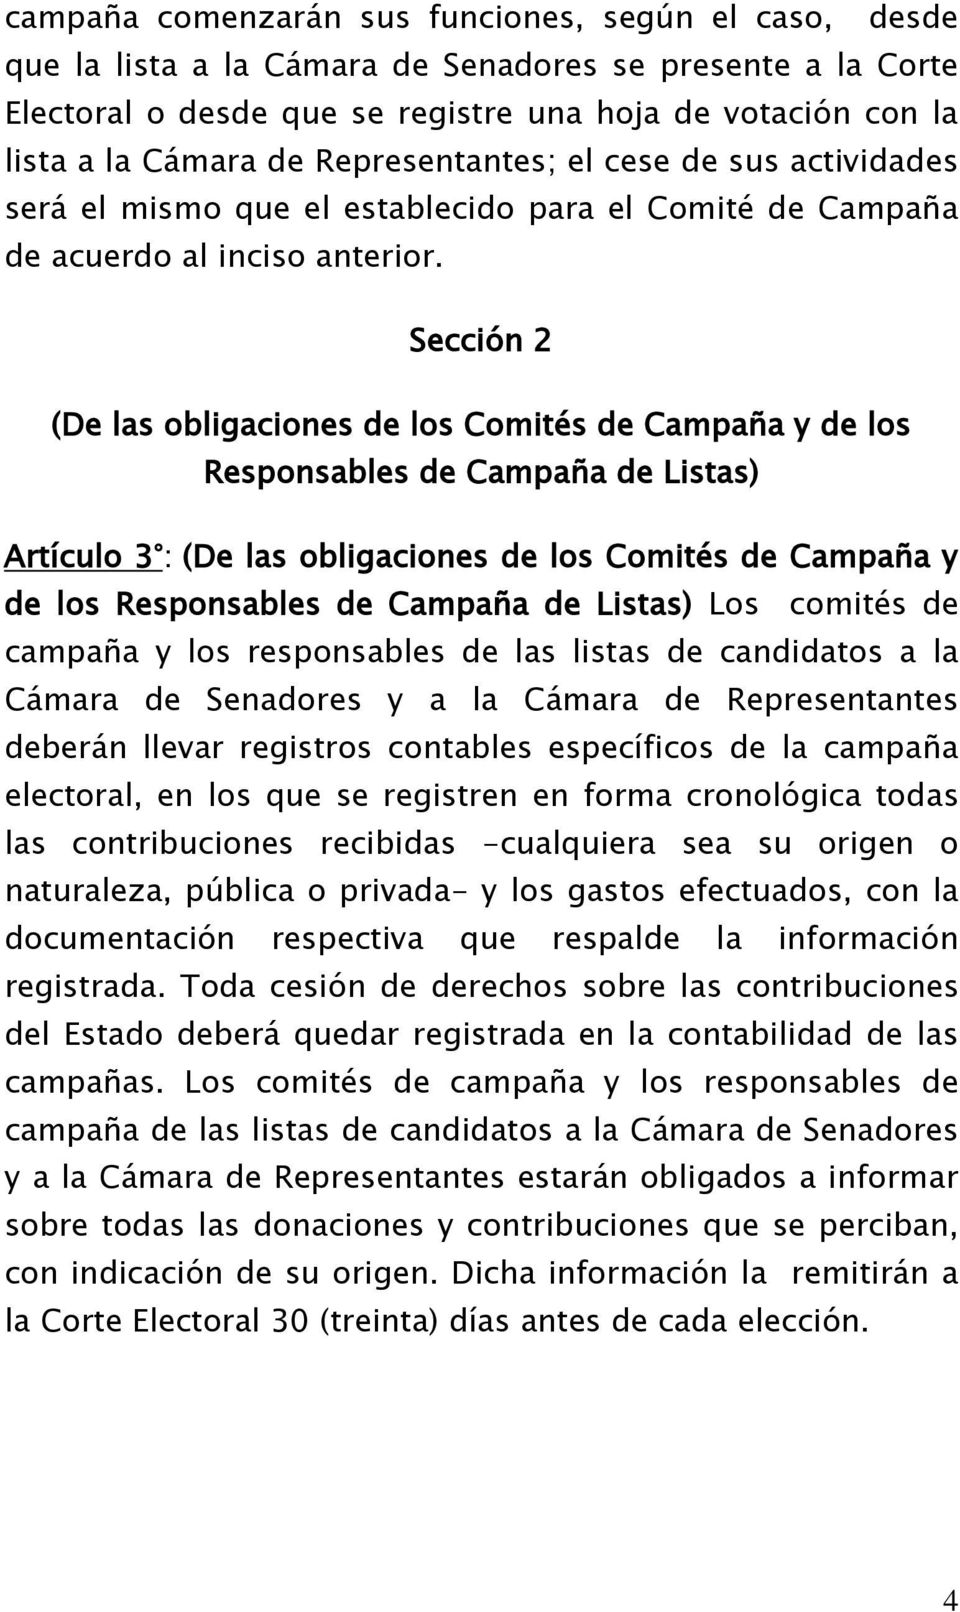 Sección 2 (De las obligaciones de los Comités de Campaña y de los Responsables de Campaña de Listas) Artículo 3 : (De las obligaciones de los Comités de Campaña y de los Responsables de Campaña de